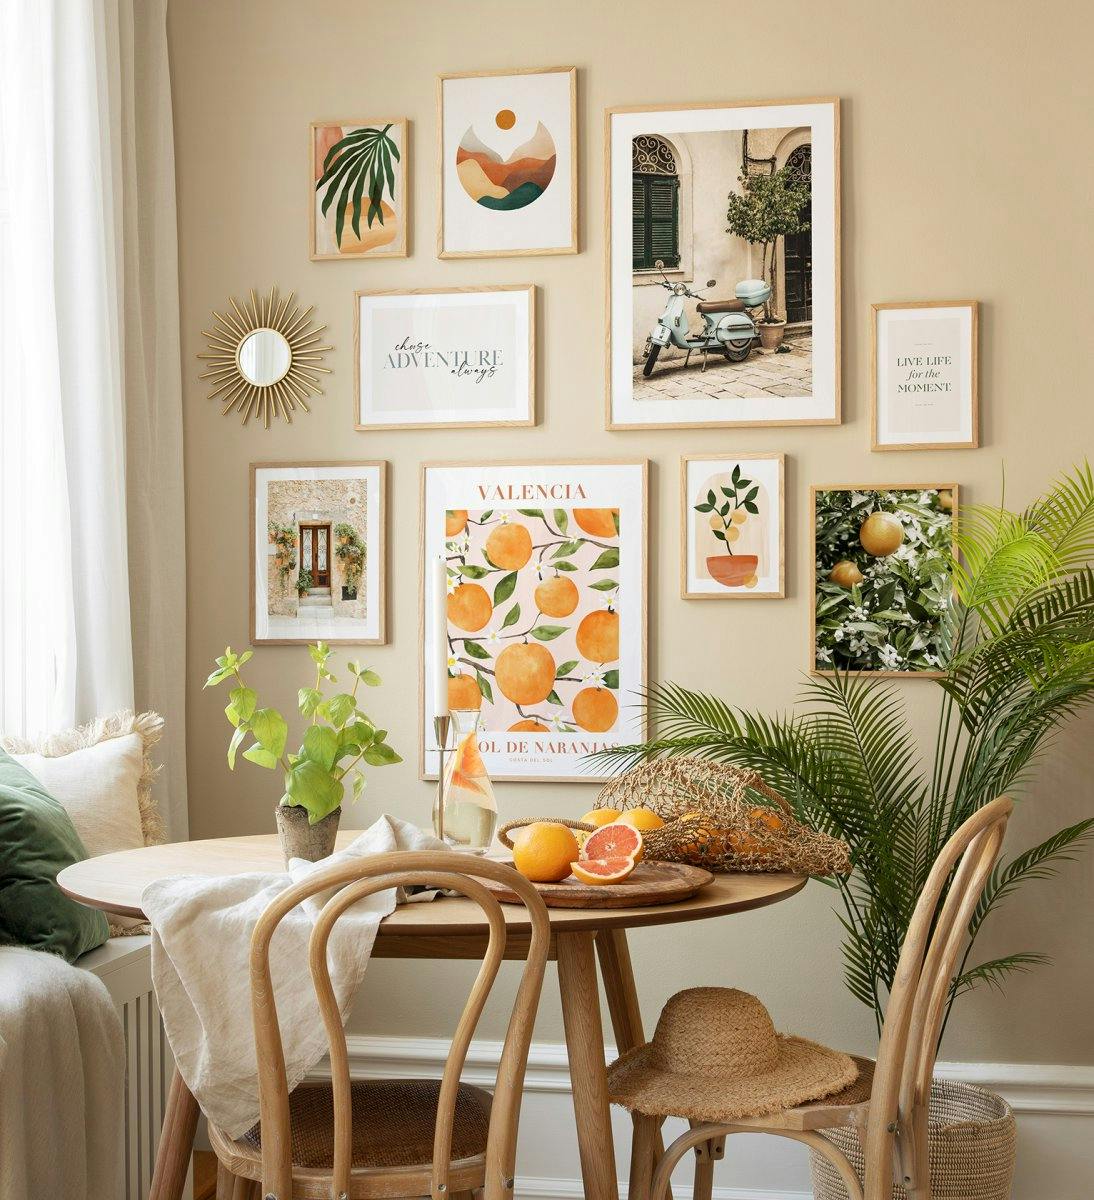 Galerie foto de perete elegantă pentru bucătăria ta. Inspiră-te din aceste postere în tendințe și rame de stejar și renovează-ți